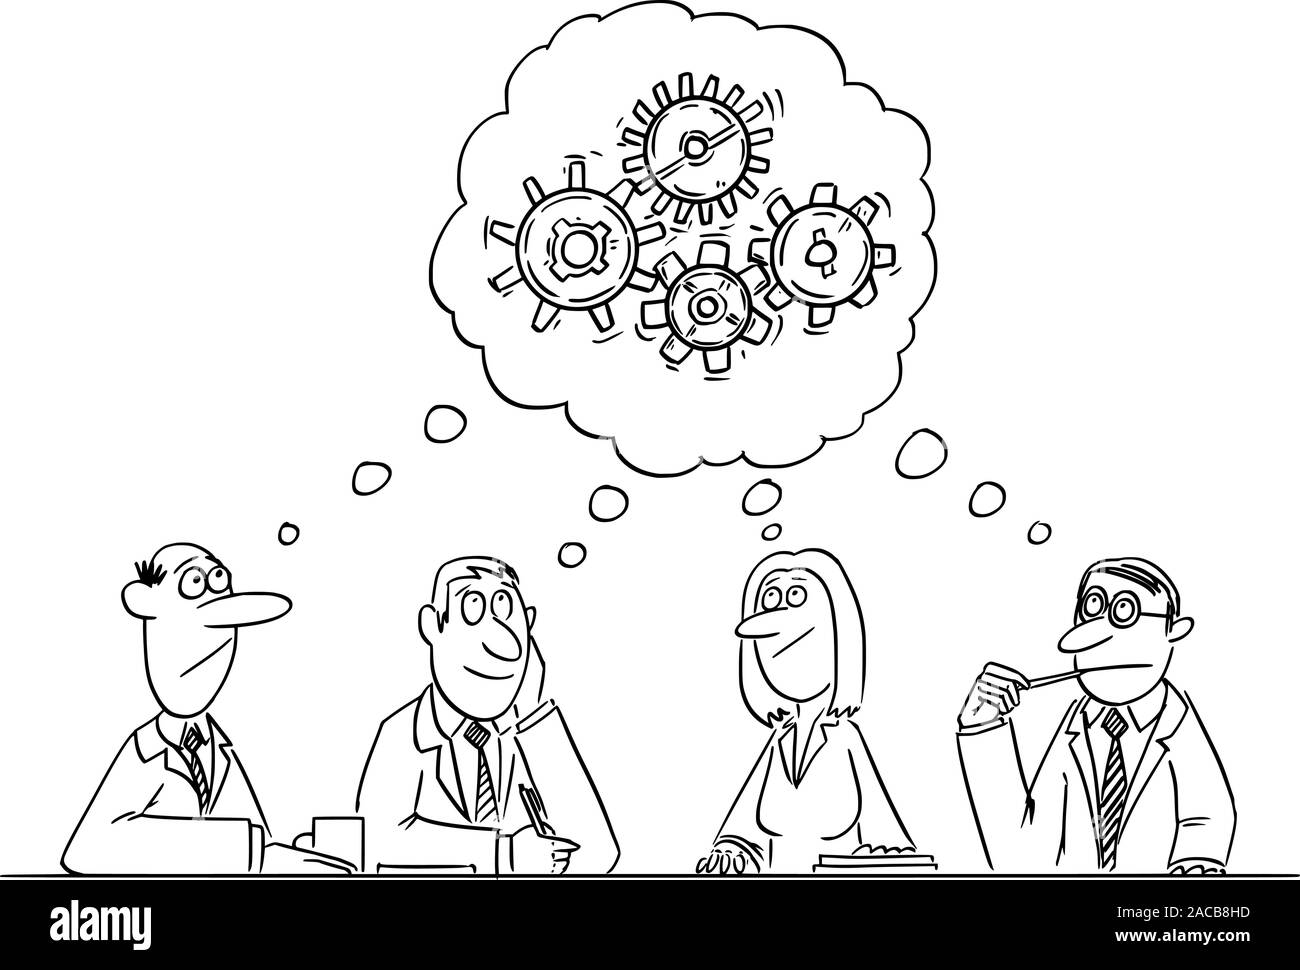 Vektor witzigen Comic cartoon Zeichnen von Business Team Meeting und Brainstorming. Team ist Denken und Brainstorming in die Lösung des Problems. Stock Vektor